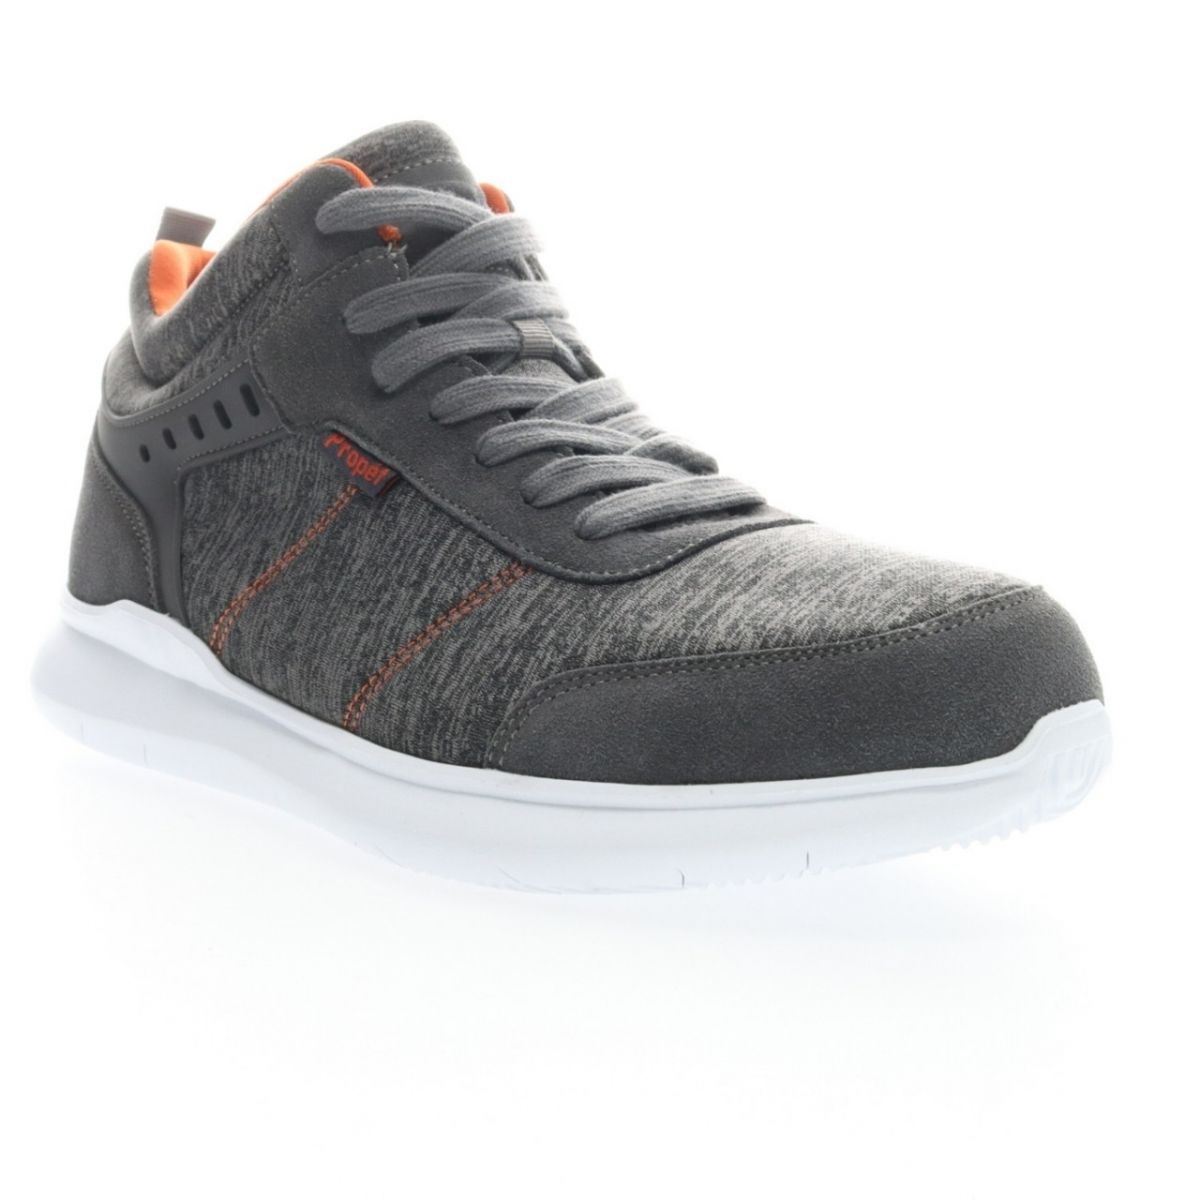 Propet Men's Viator Hi Sneaker Grey/Orange - MAA112MGOR Grey/orange - Grey/orange, 10.5 X-Wide